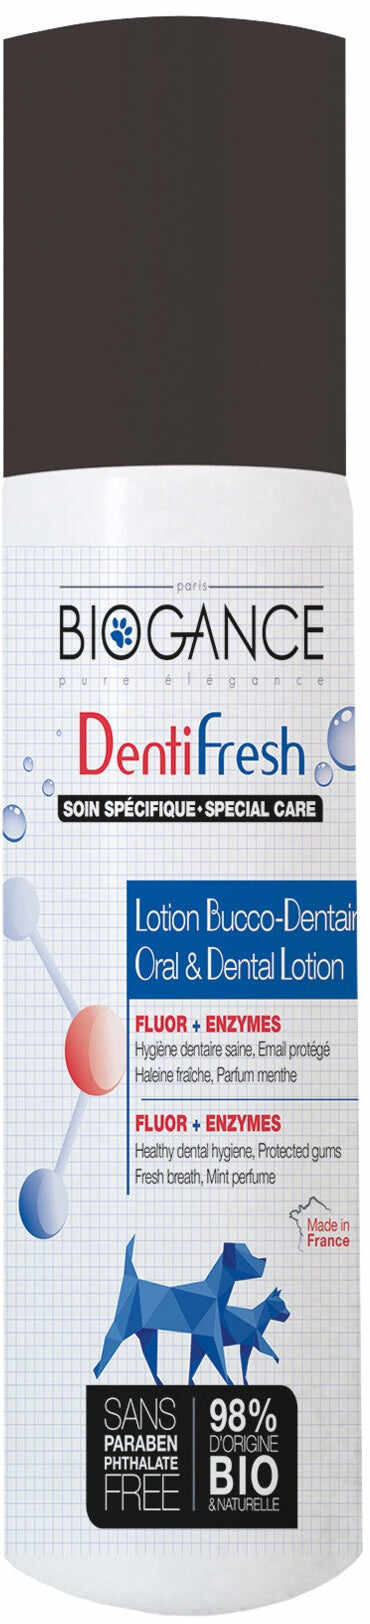 BIOGANCE DentiFresh, spray pentru igienă dentară, 100ml